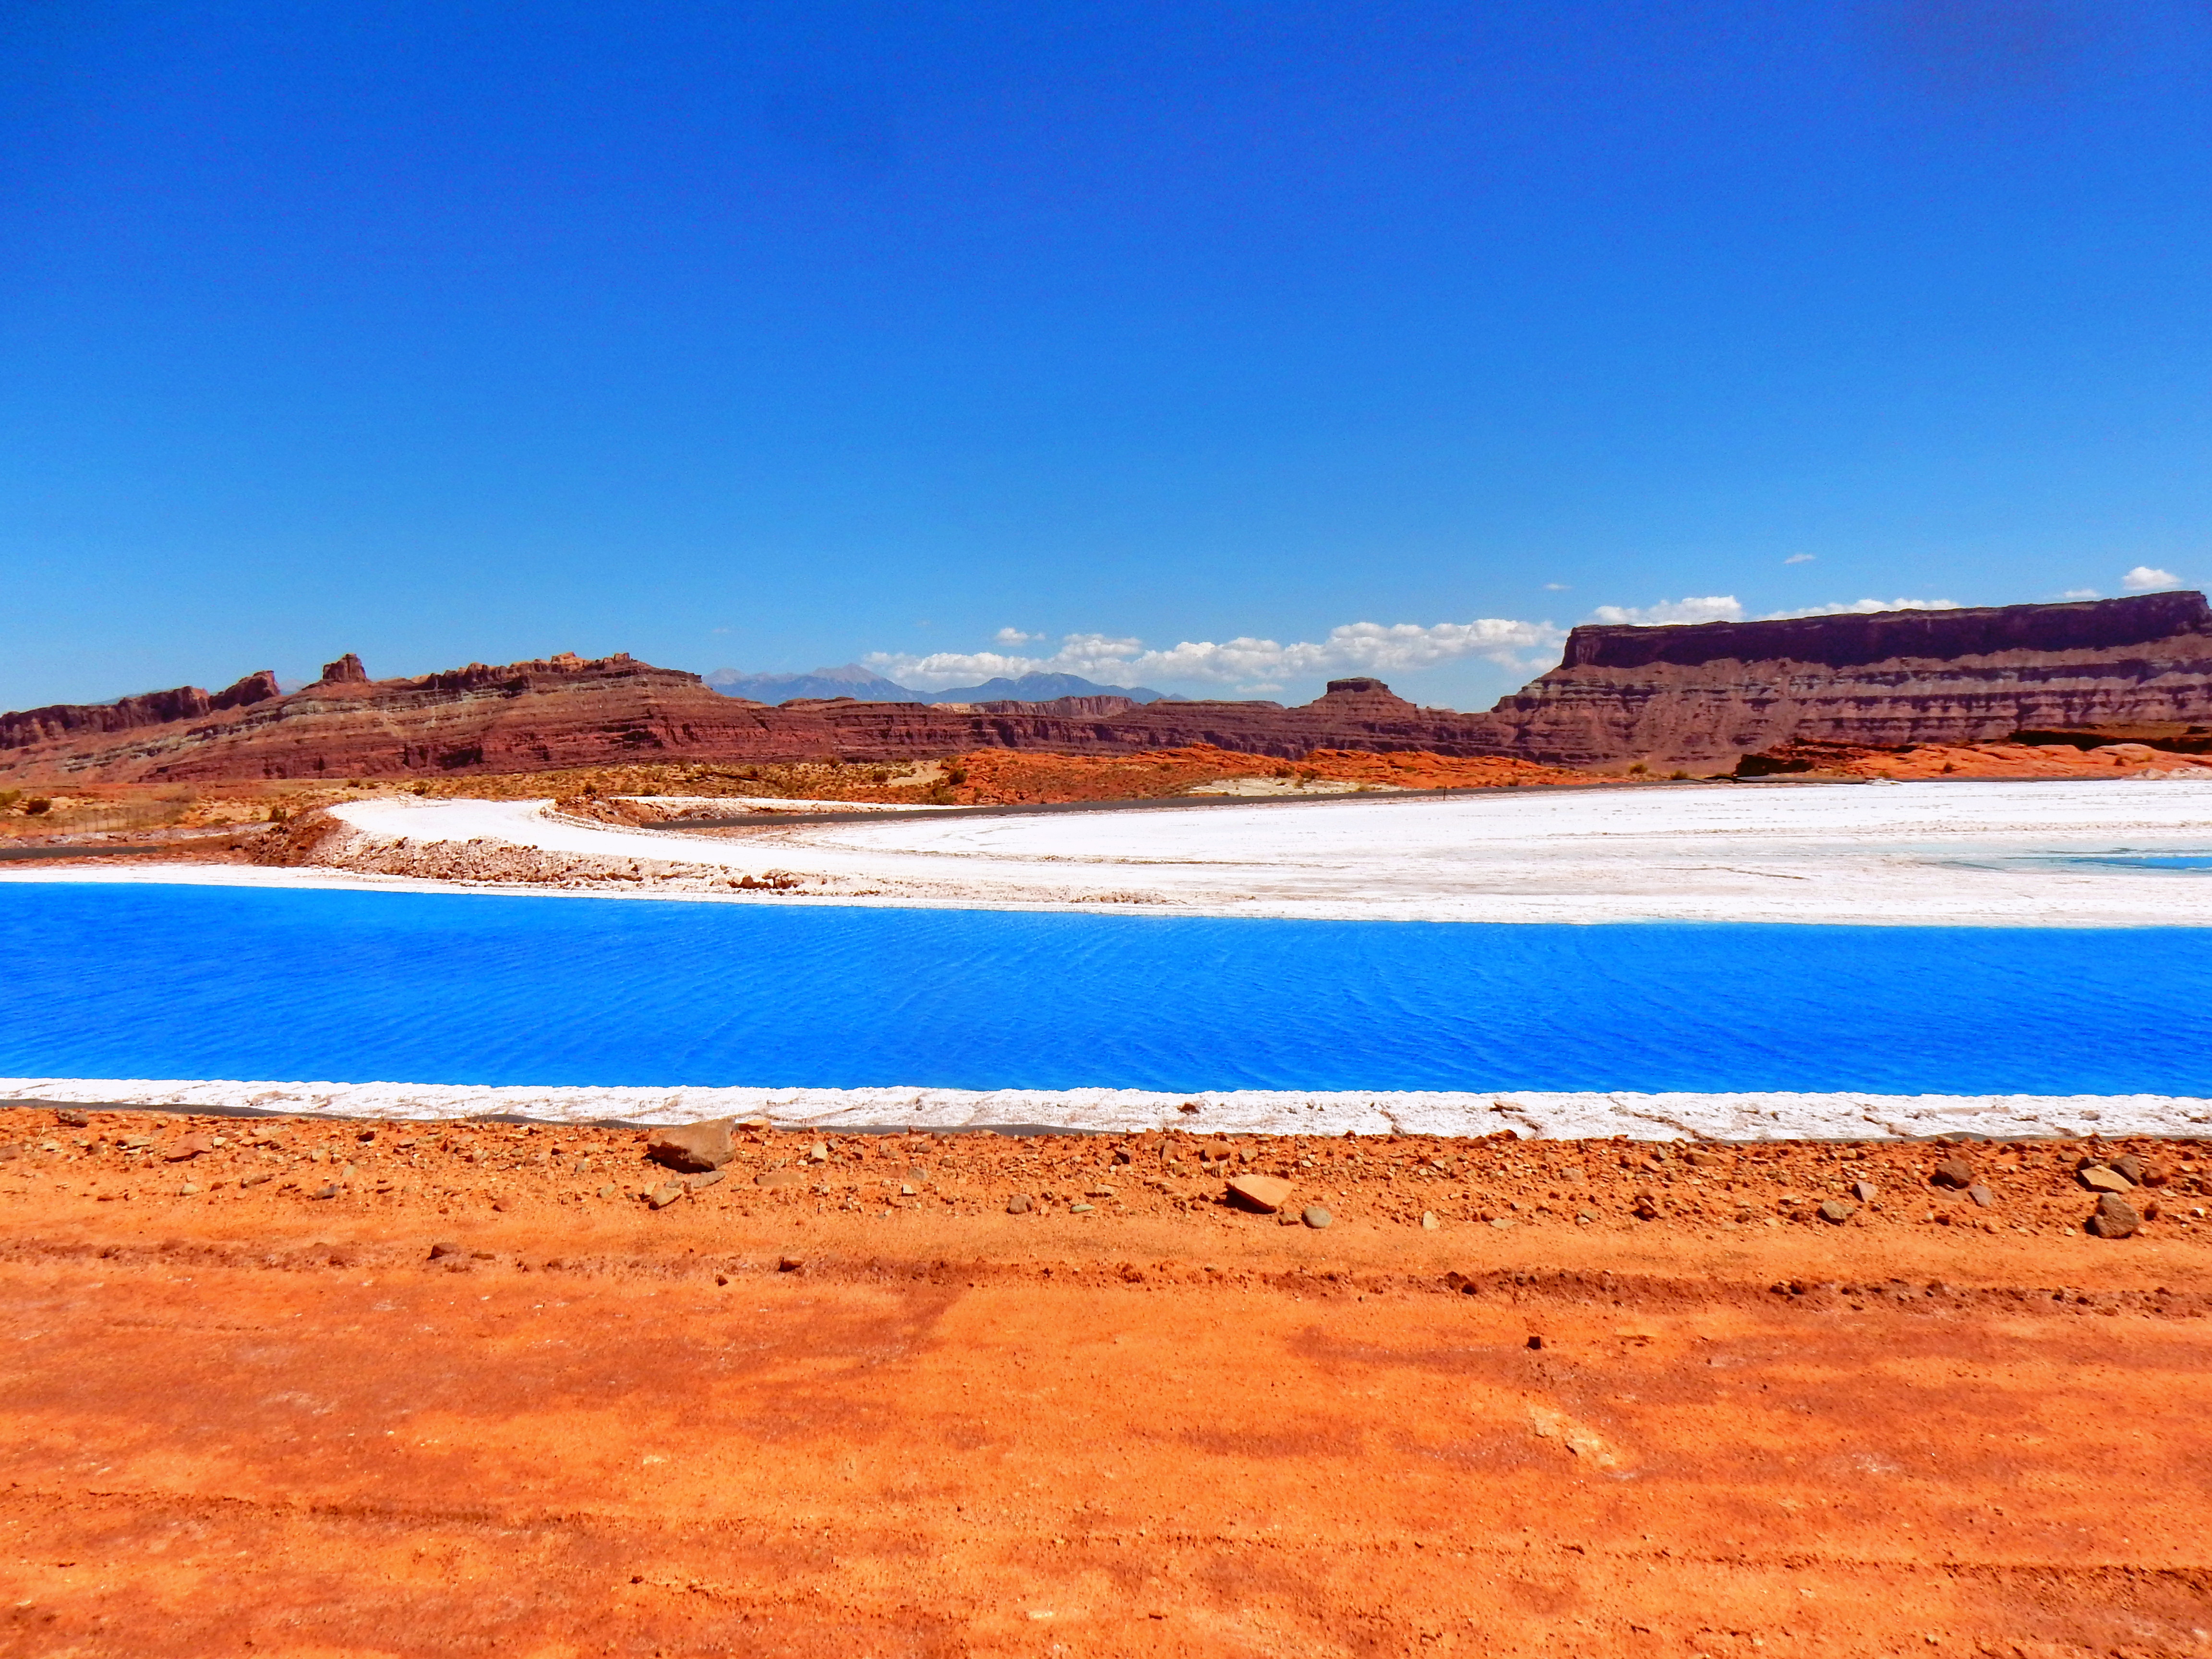 21: Intrepid Potash evaporation pond near Moab, Utah, USA. Blue